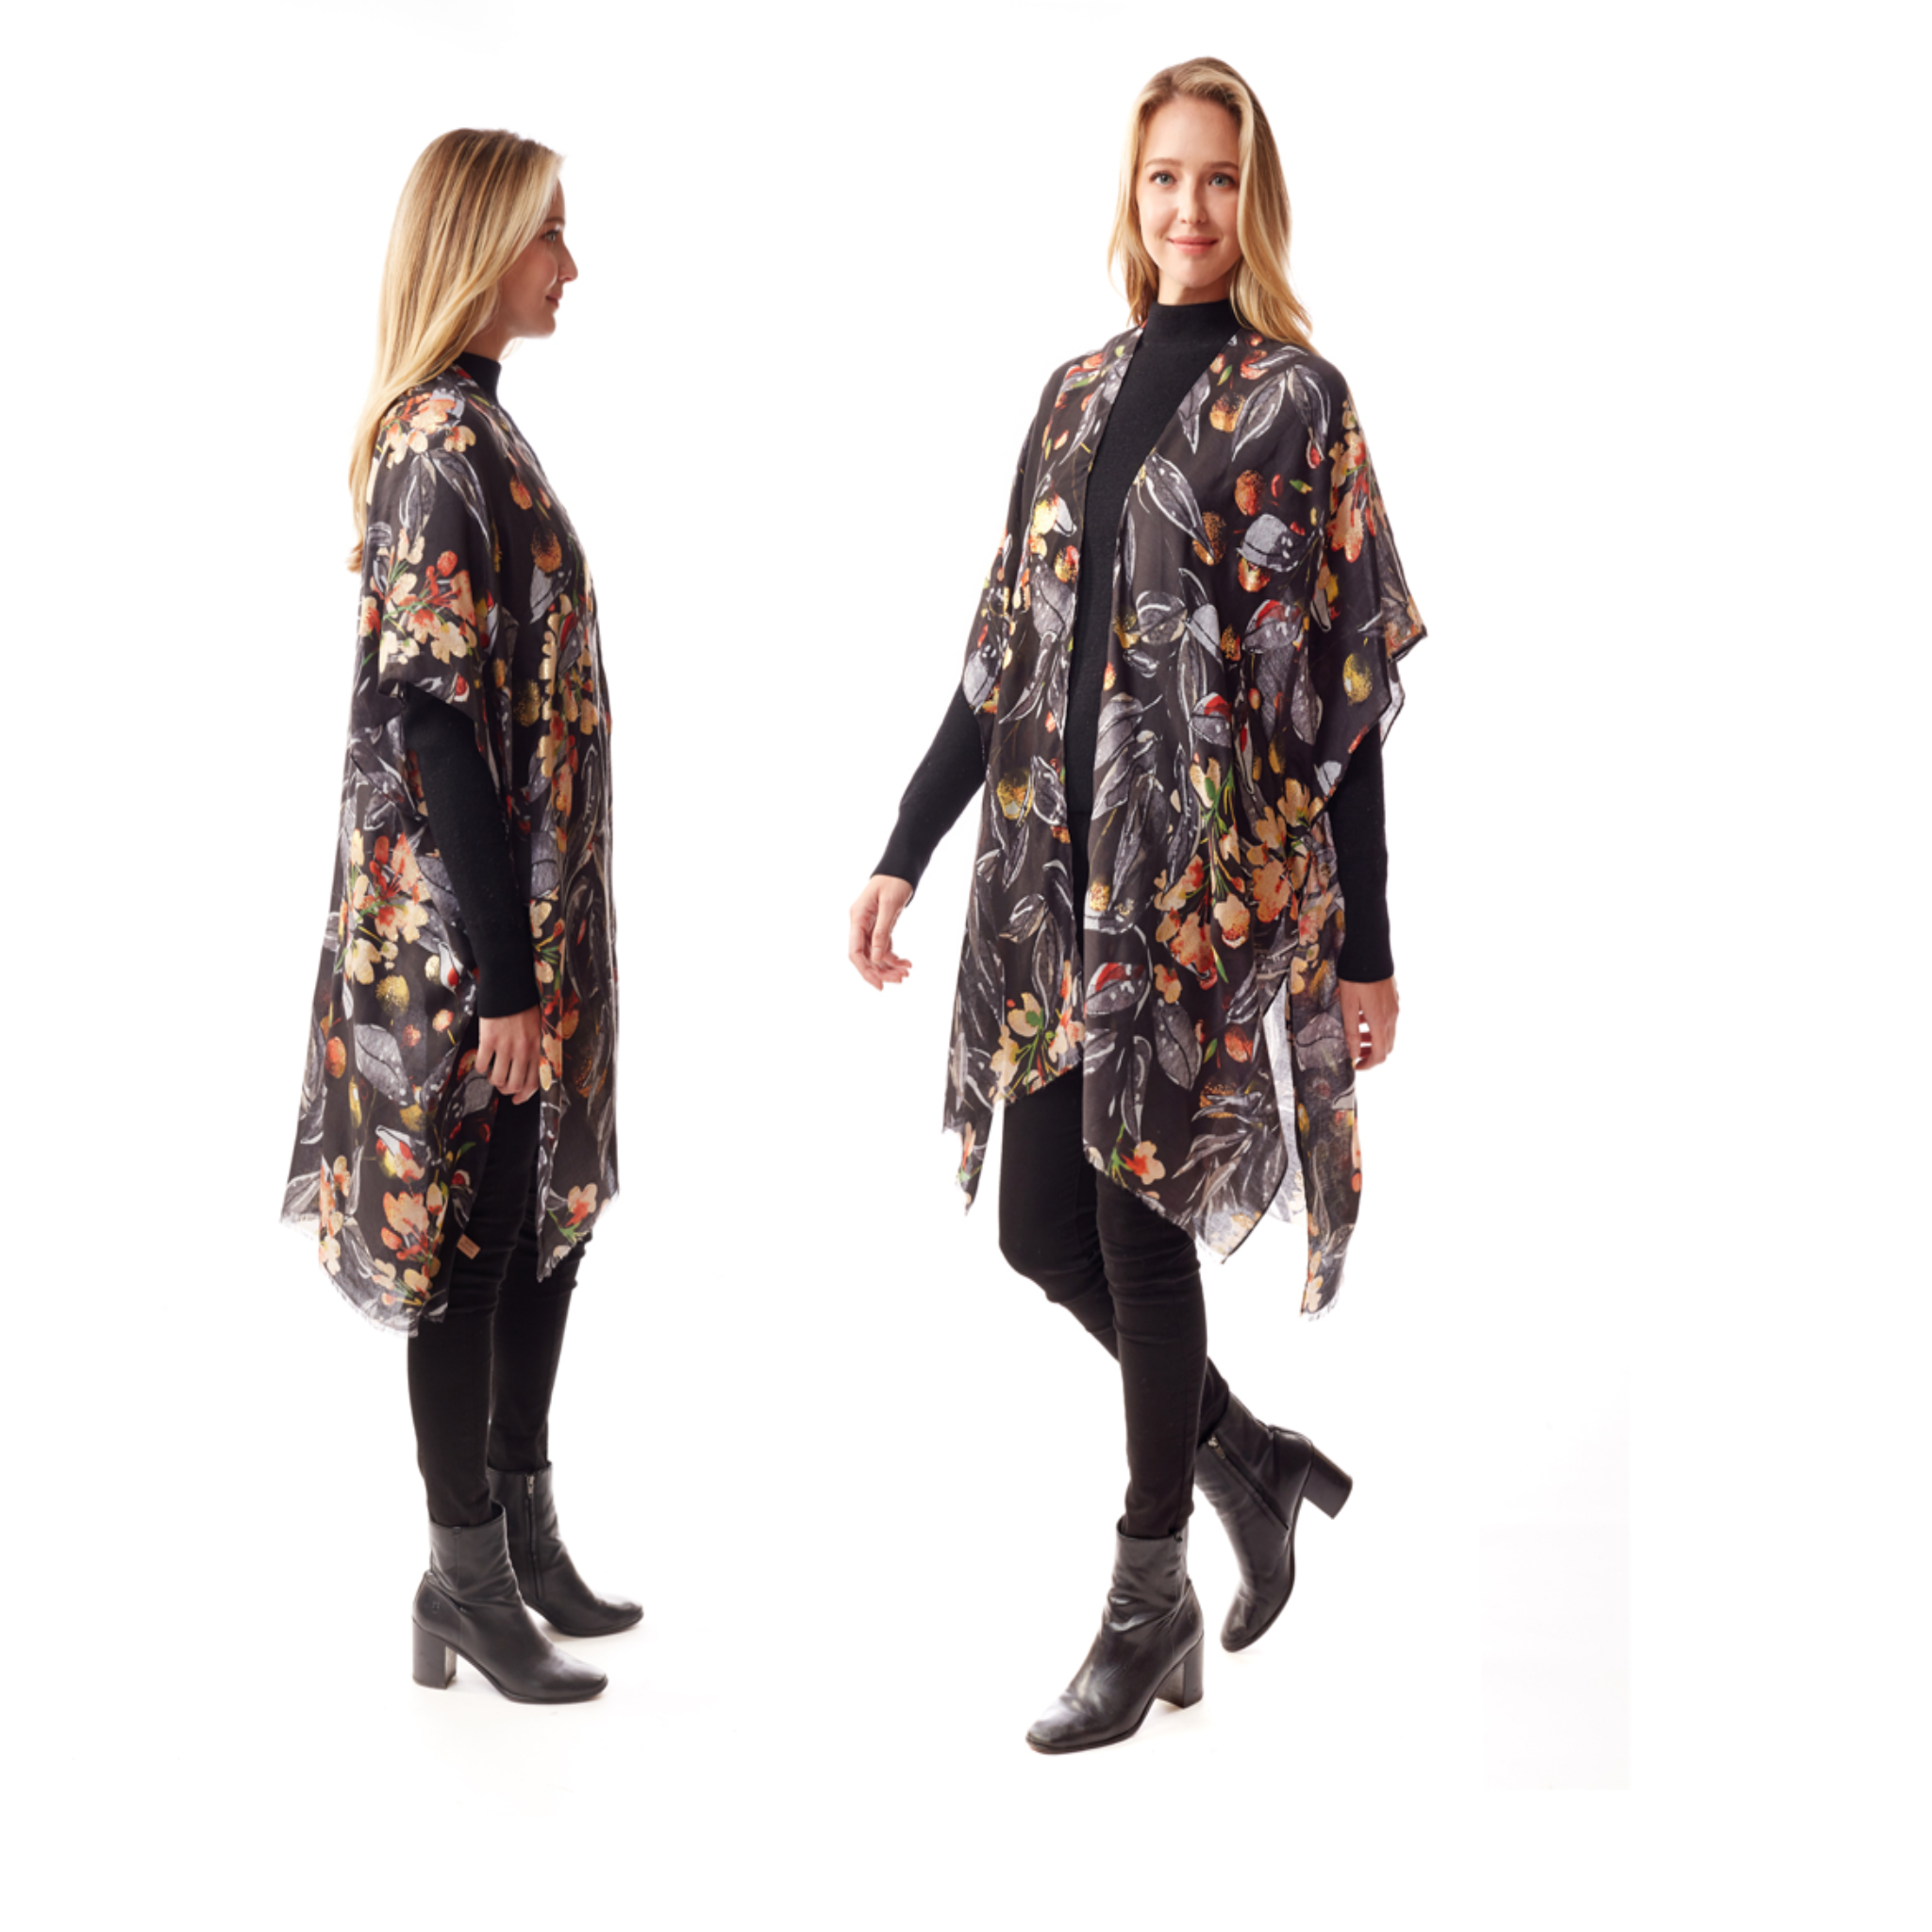 Floral Print w/ Lurex Accent Kimono